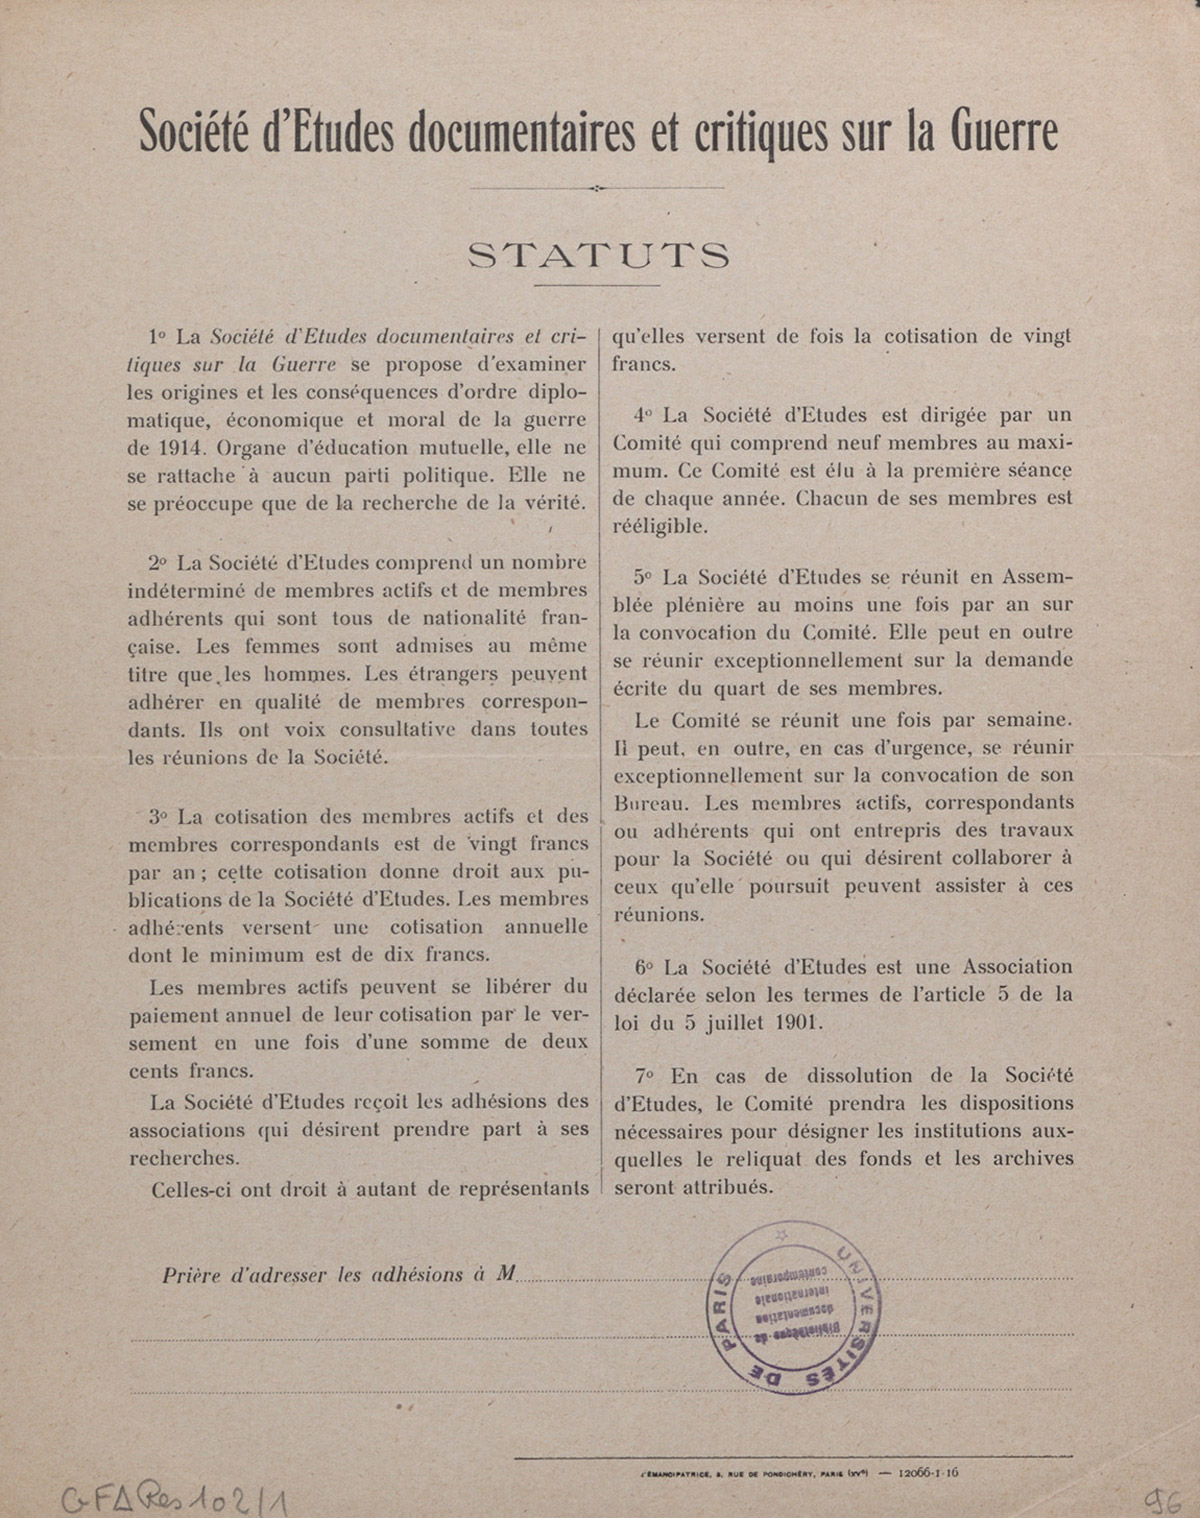 Statuts de la Société d'Études documentaires et critiques sur la Guerre, 1916